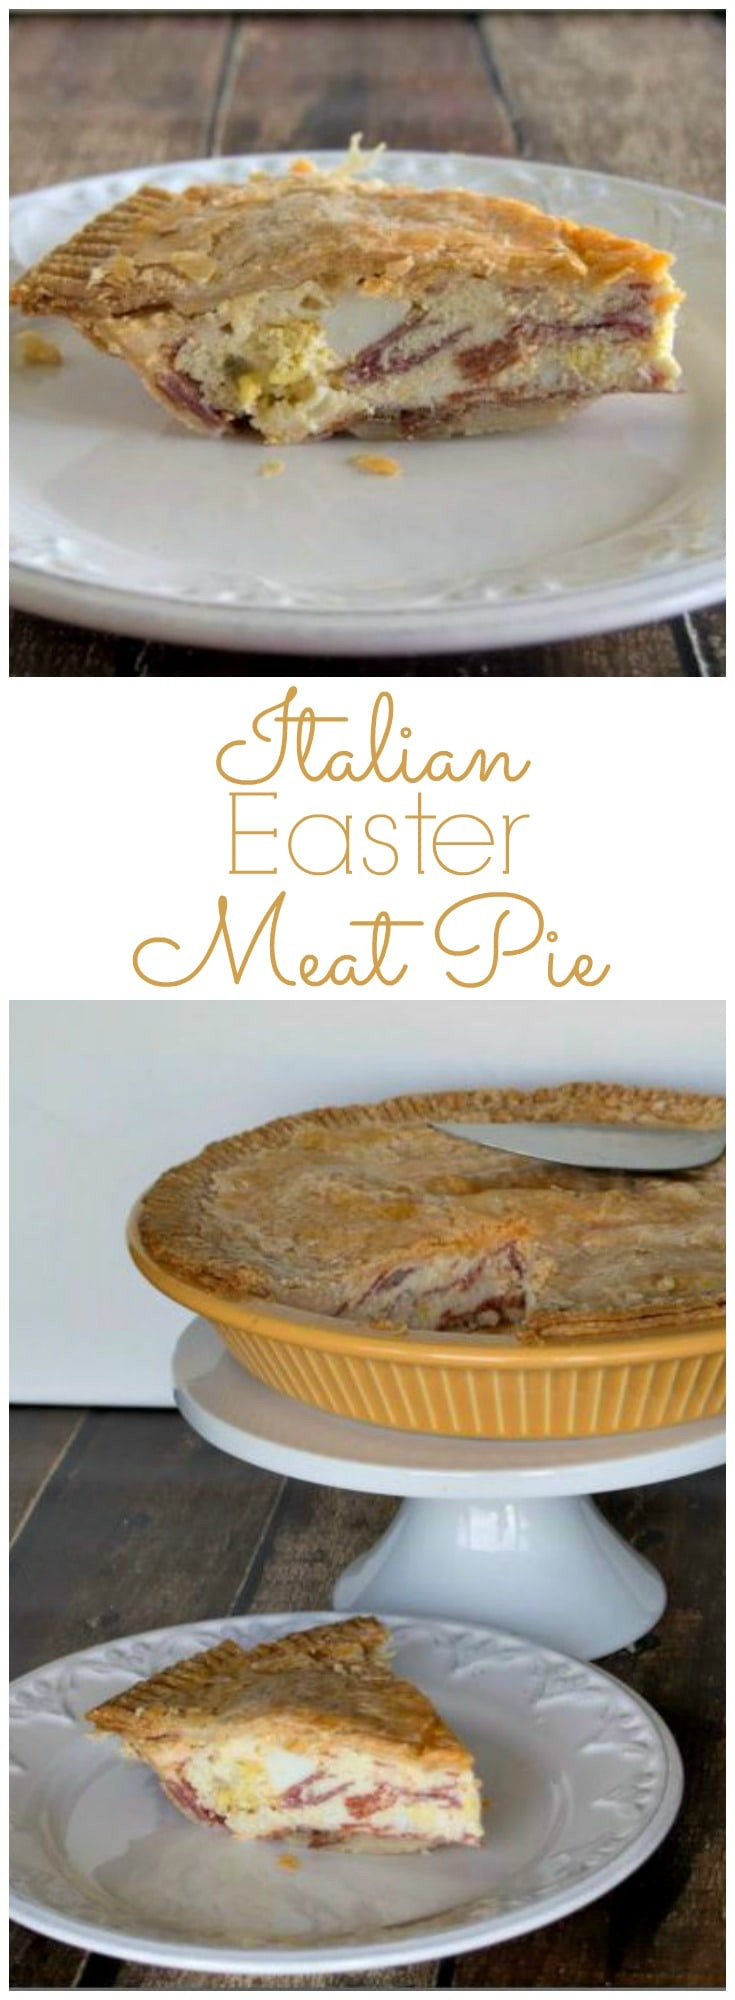 Italian Easter Meat Pie Recipe
 Italian Easter Meat Pie